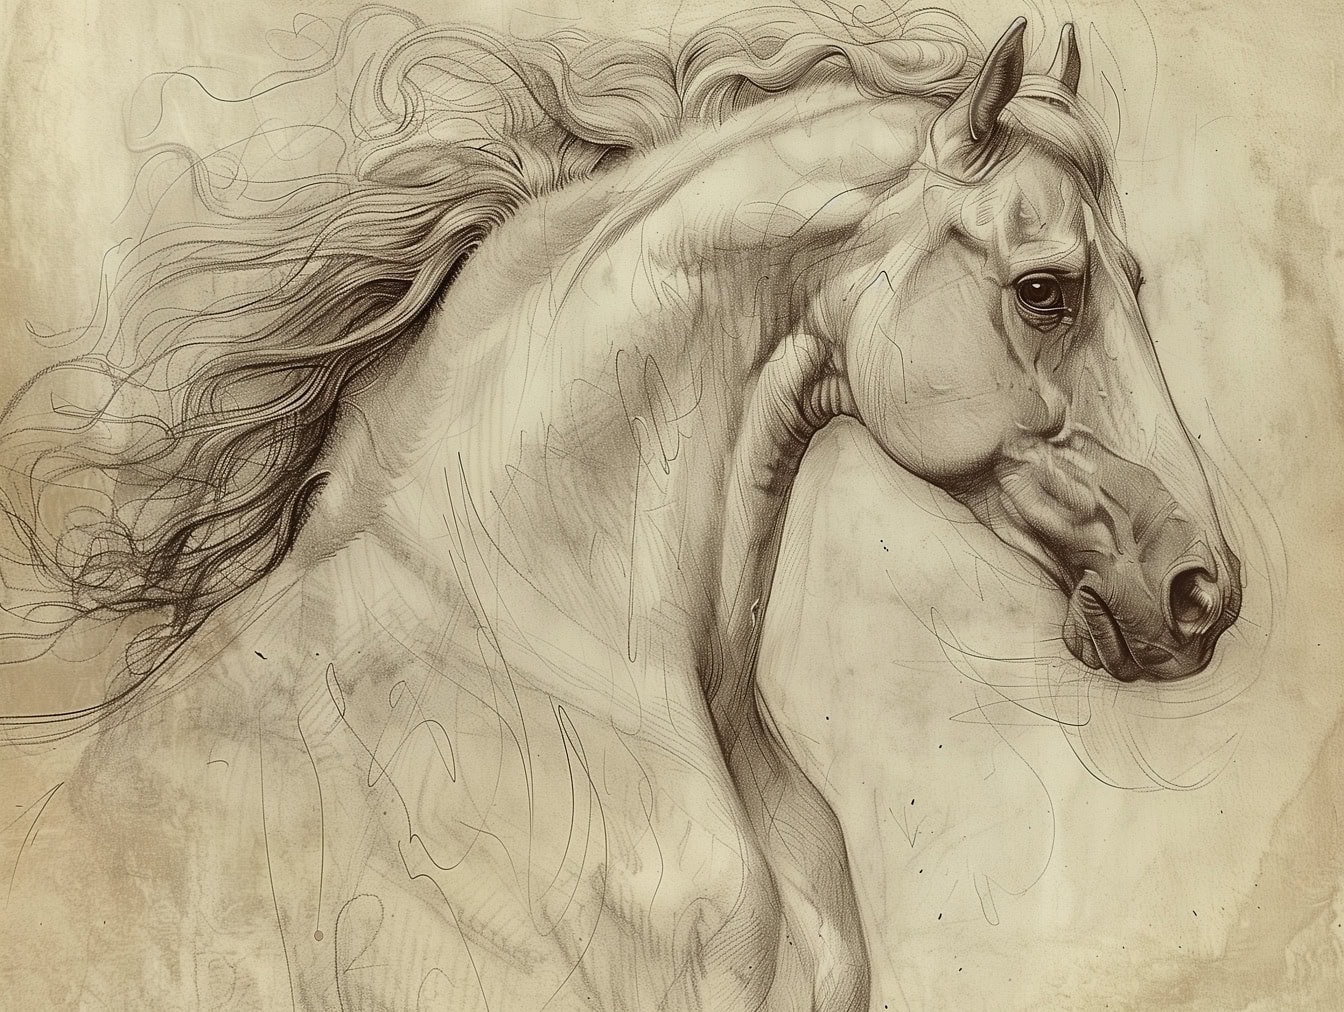 Σχέδιο κεφαλής αλόγου, ένα σκίτσο του κεφαλιού του επιβήτορα μοιάζει με την τέχνη διάσημων καλλιτεχνών